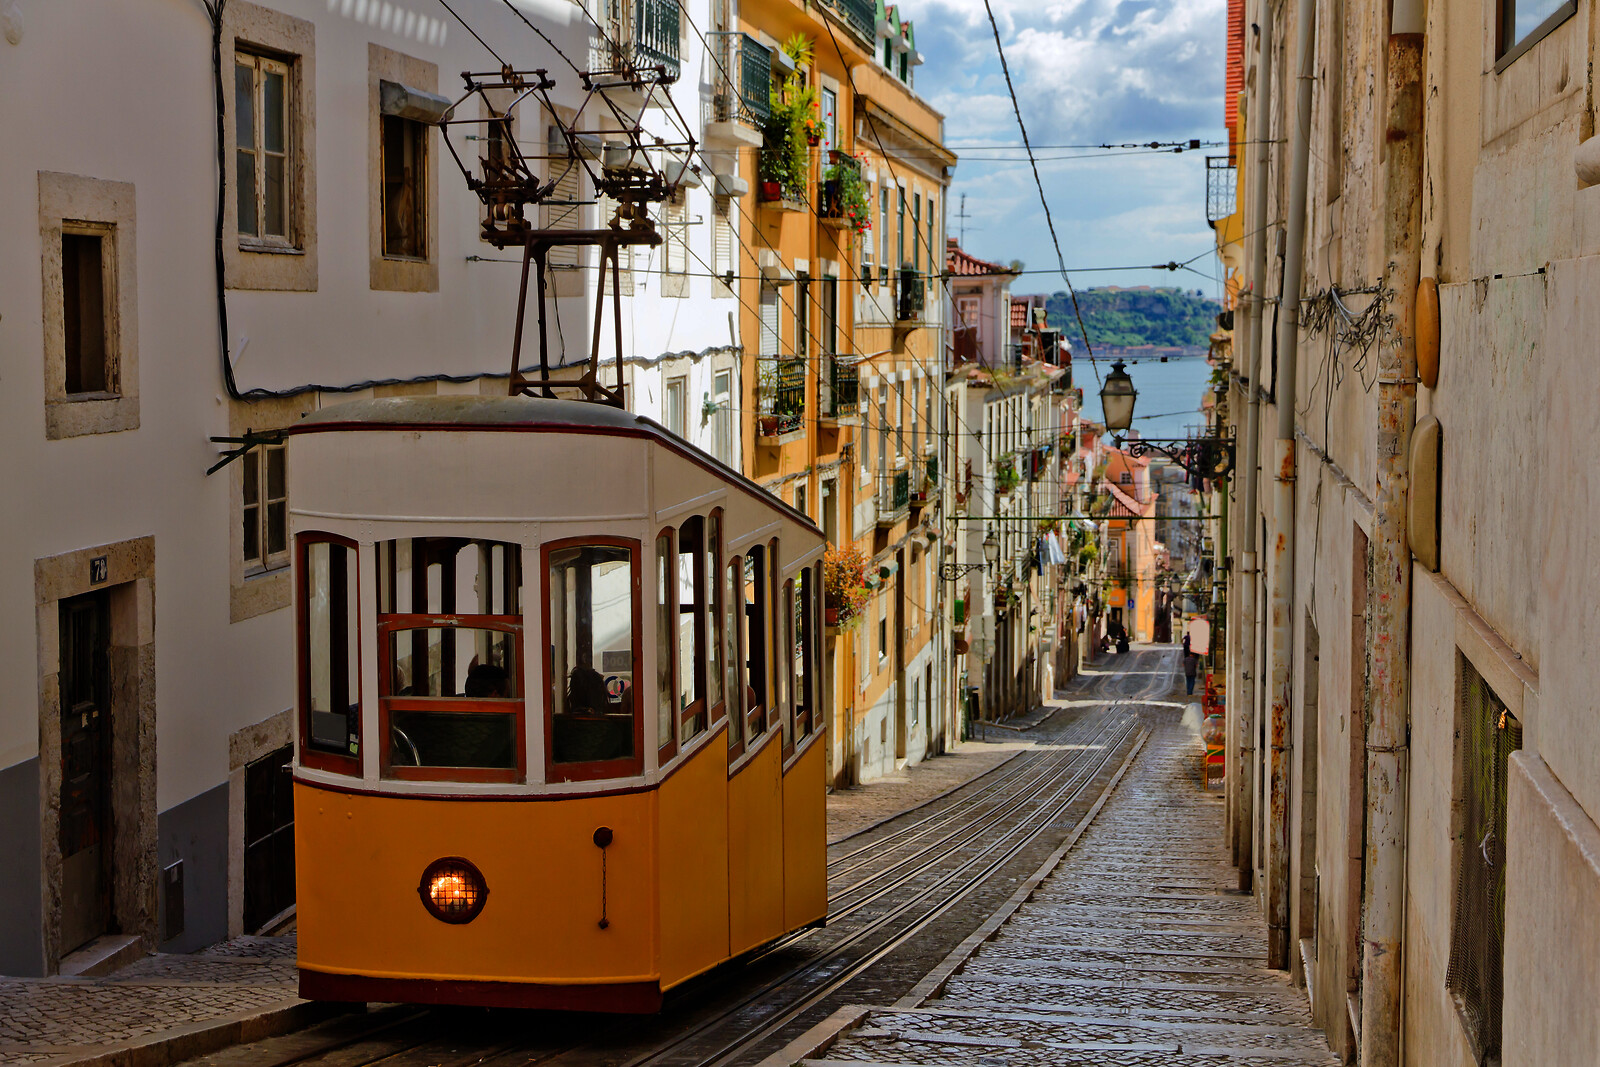 Se 3 Dages Ophold I Lissabon - Rejse og Ophold - GO DREAM hos GO DREAM DK